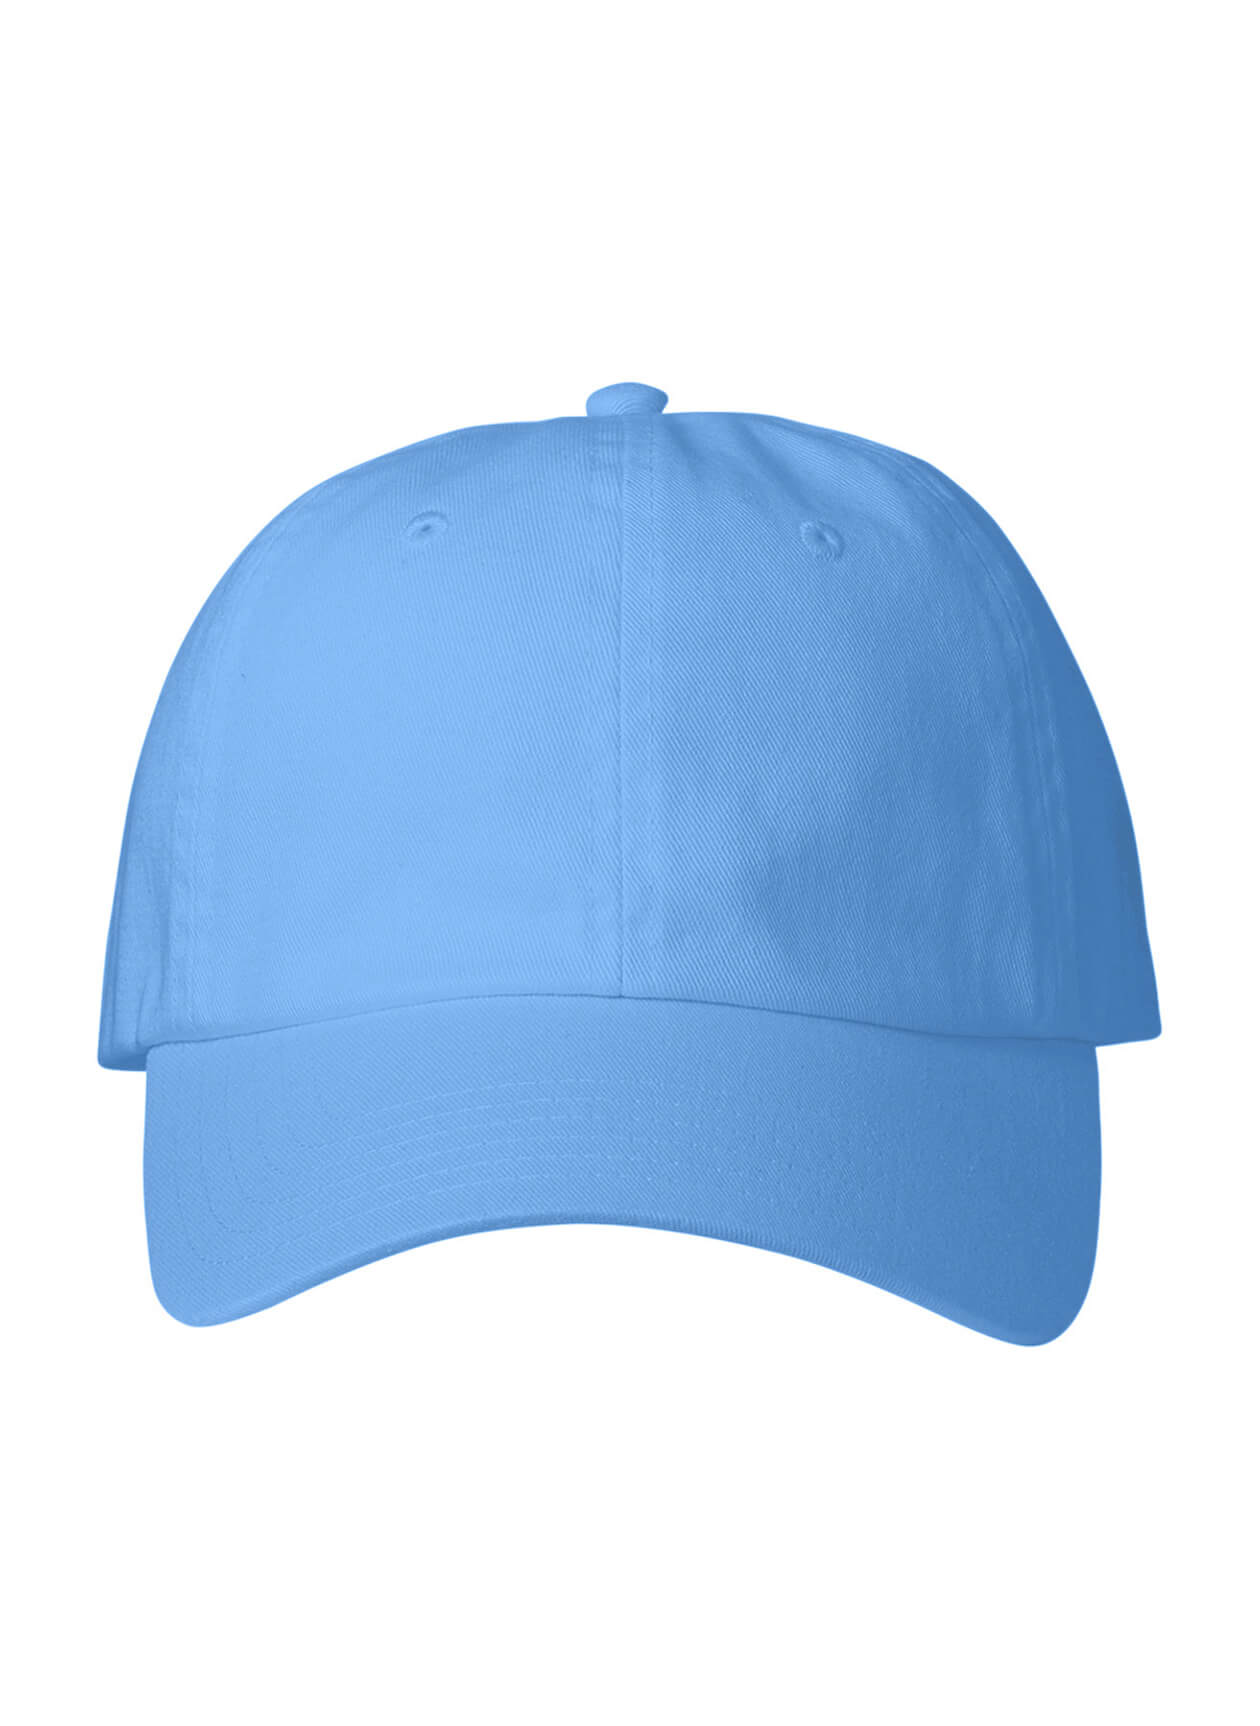 Vineyard Vines Light Blue Baseball Hat